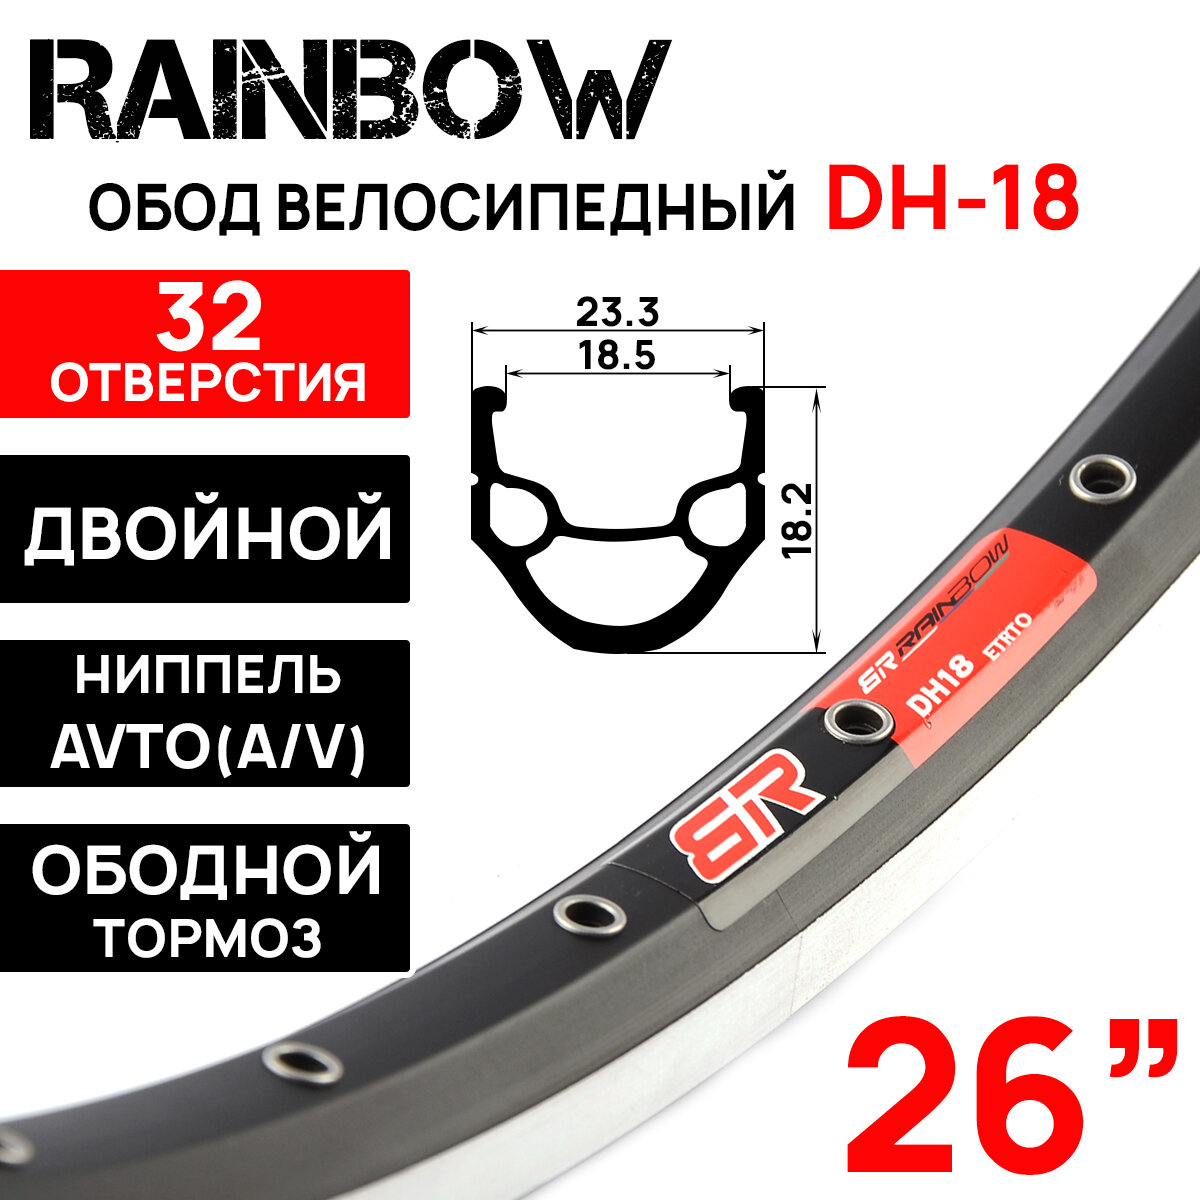 Обод Rainbow DH-18, 26" (559х19С), двойной, под V-break тормоза, 32 отверстия, черный